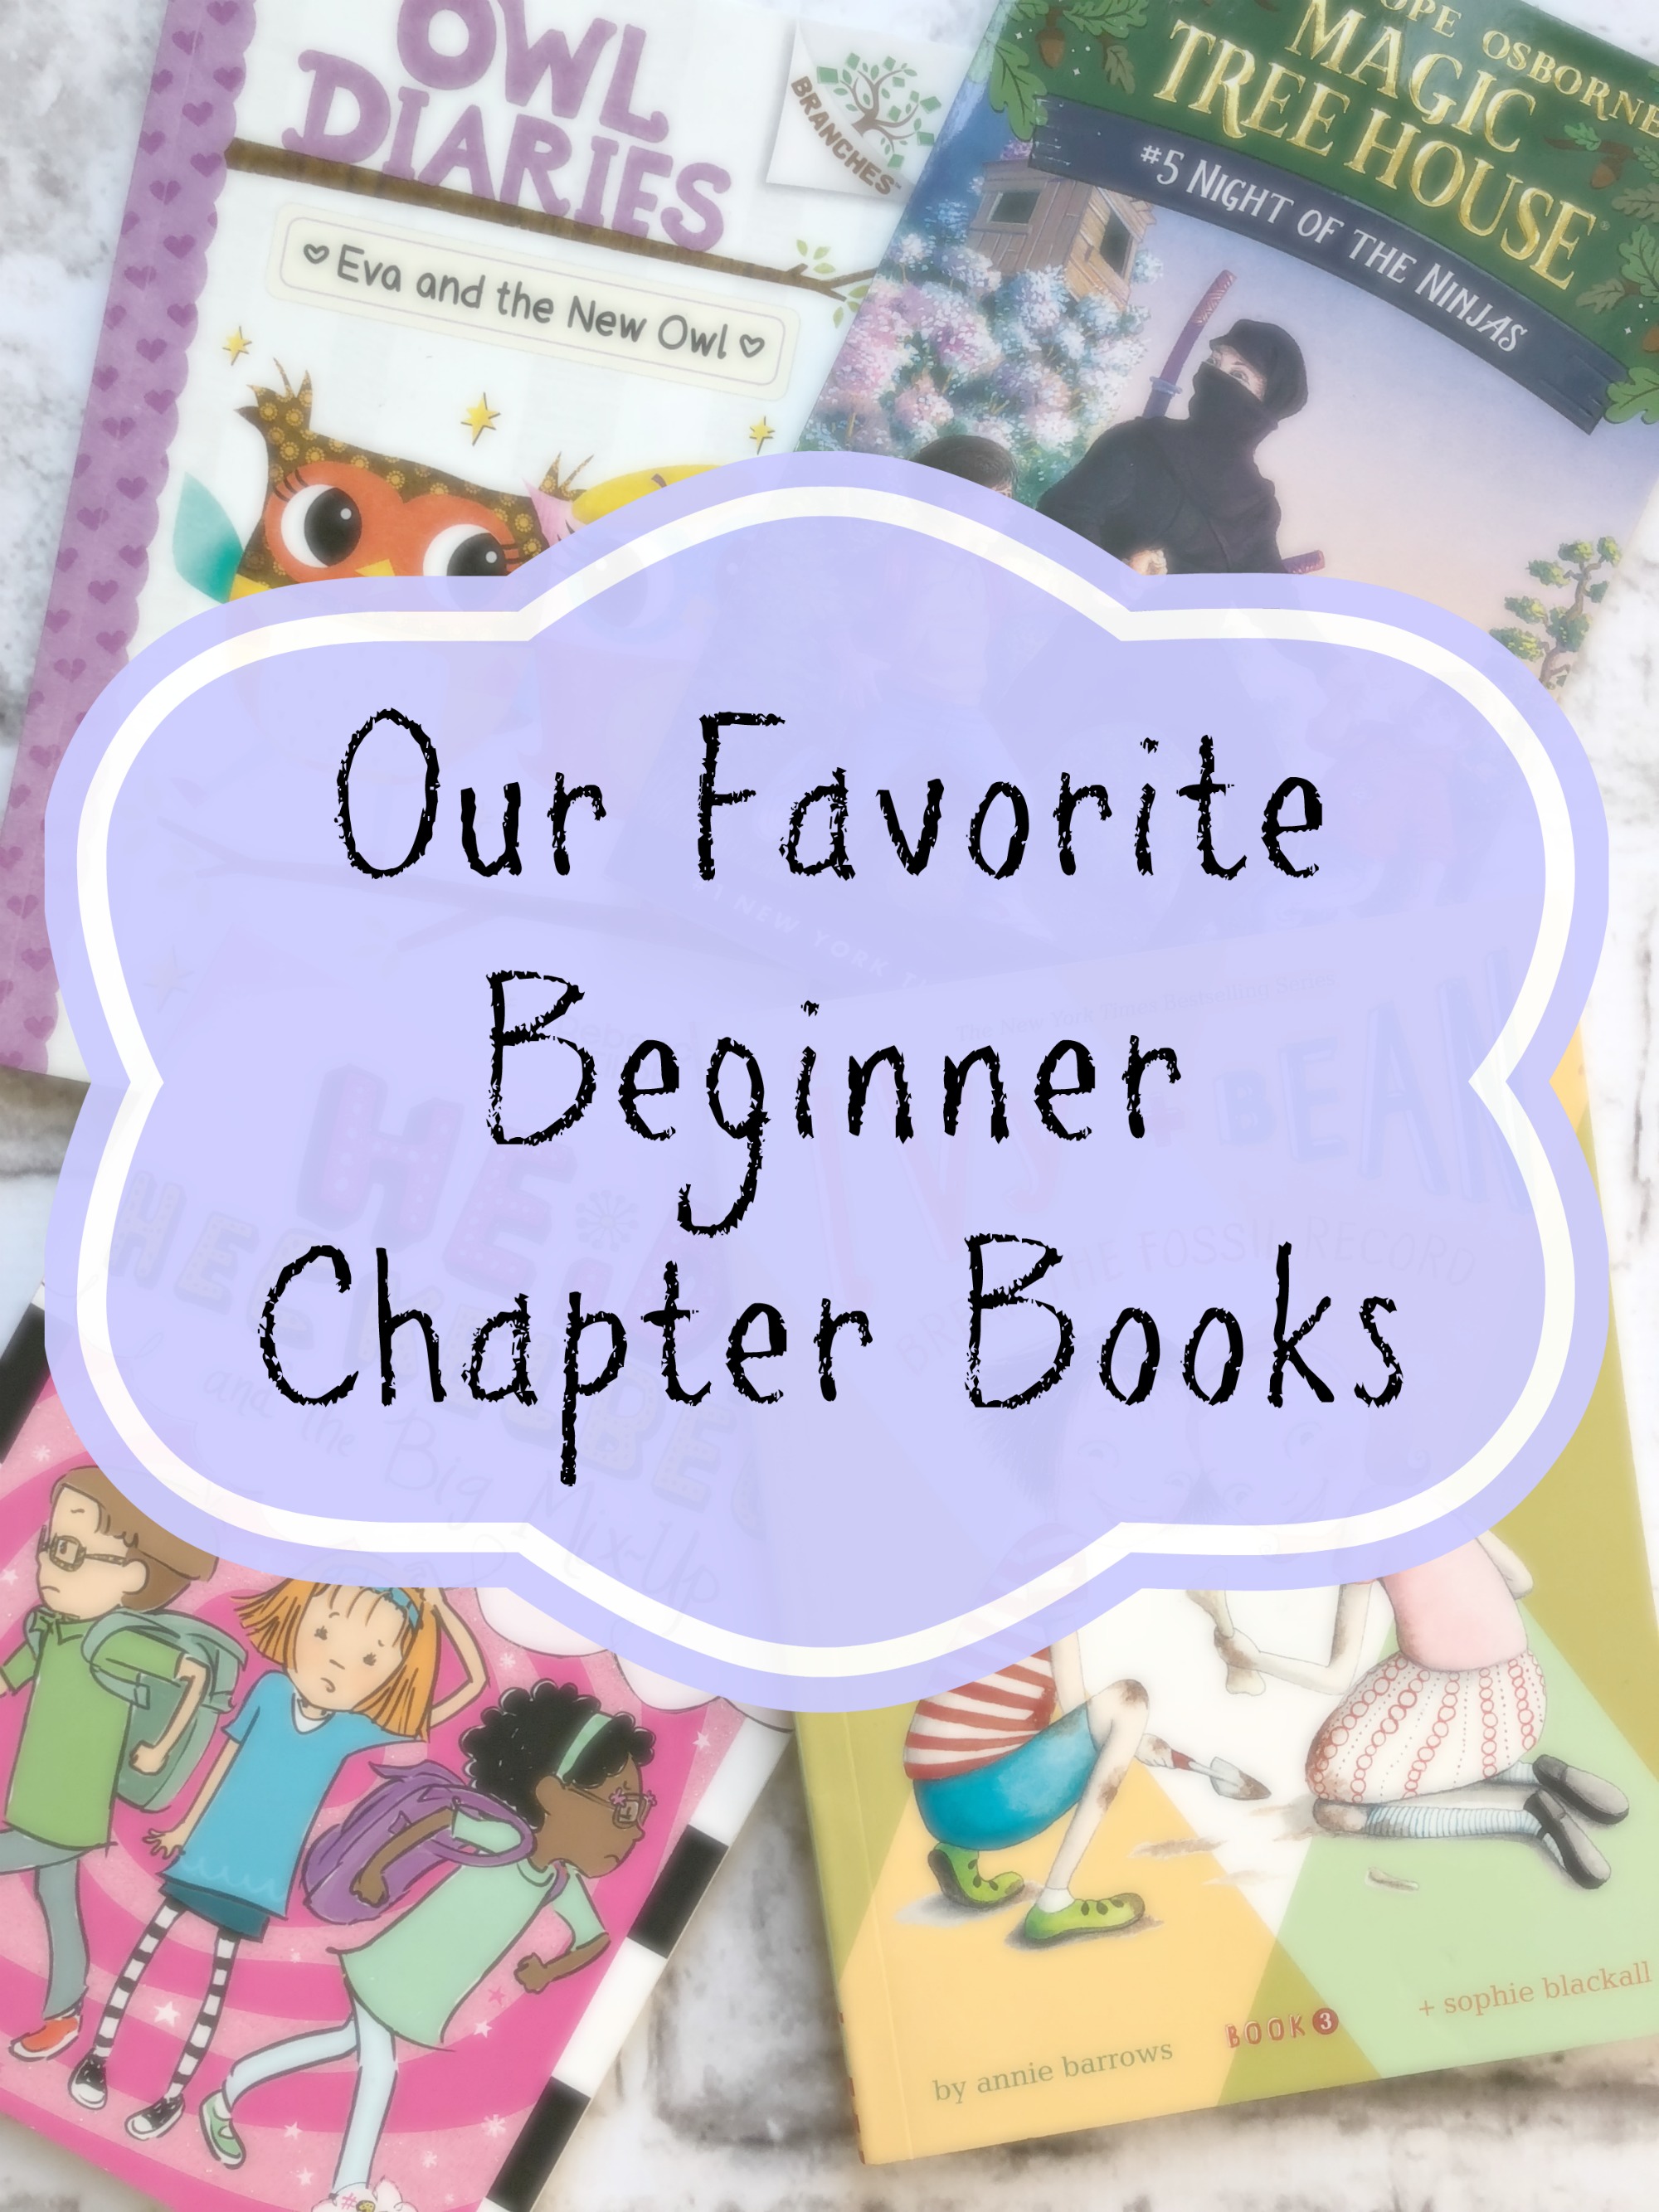 Beginner Chapter Books